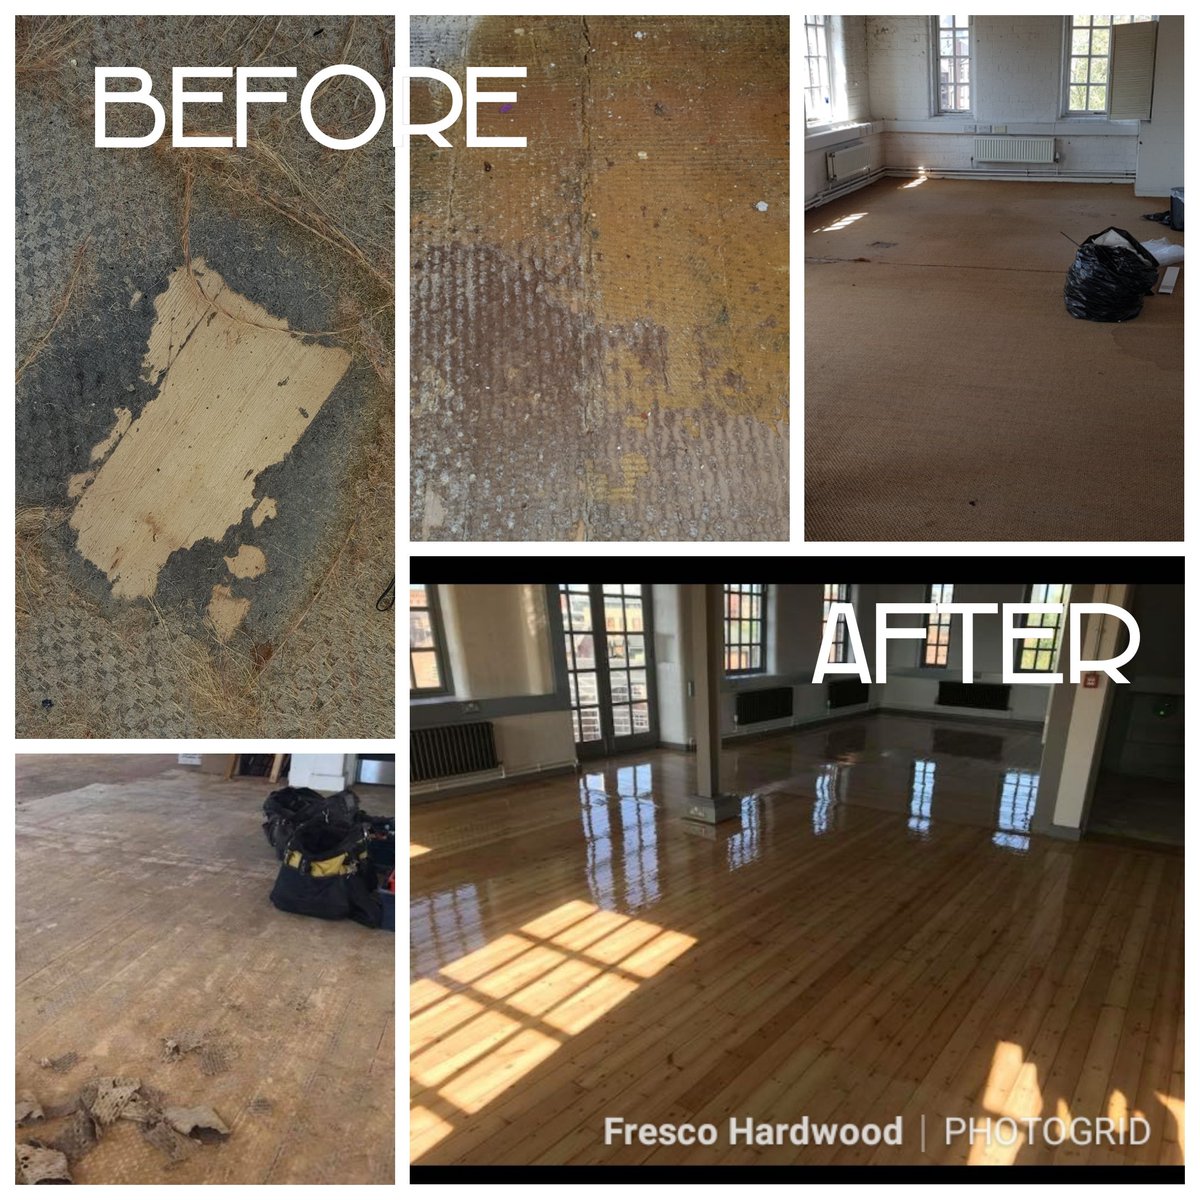 Fresco Hardwood Flooring Ltd On Twitter We Do Hope The New